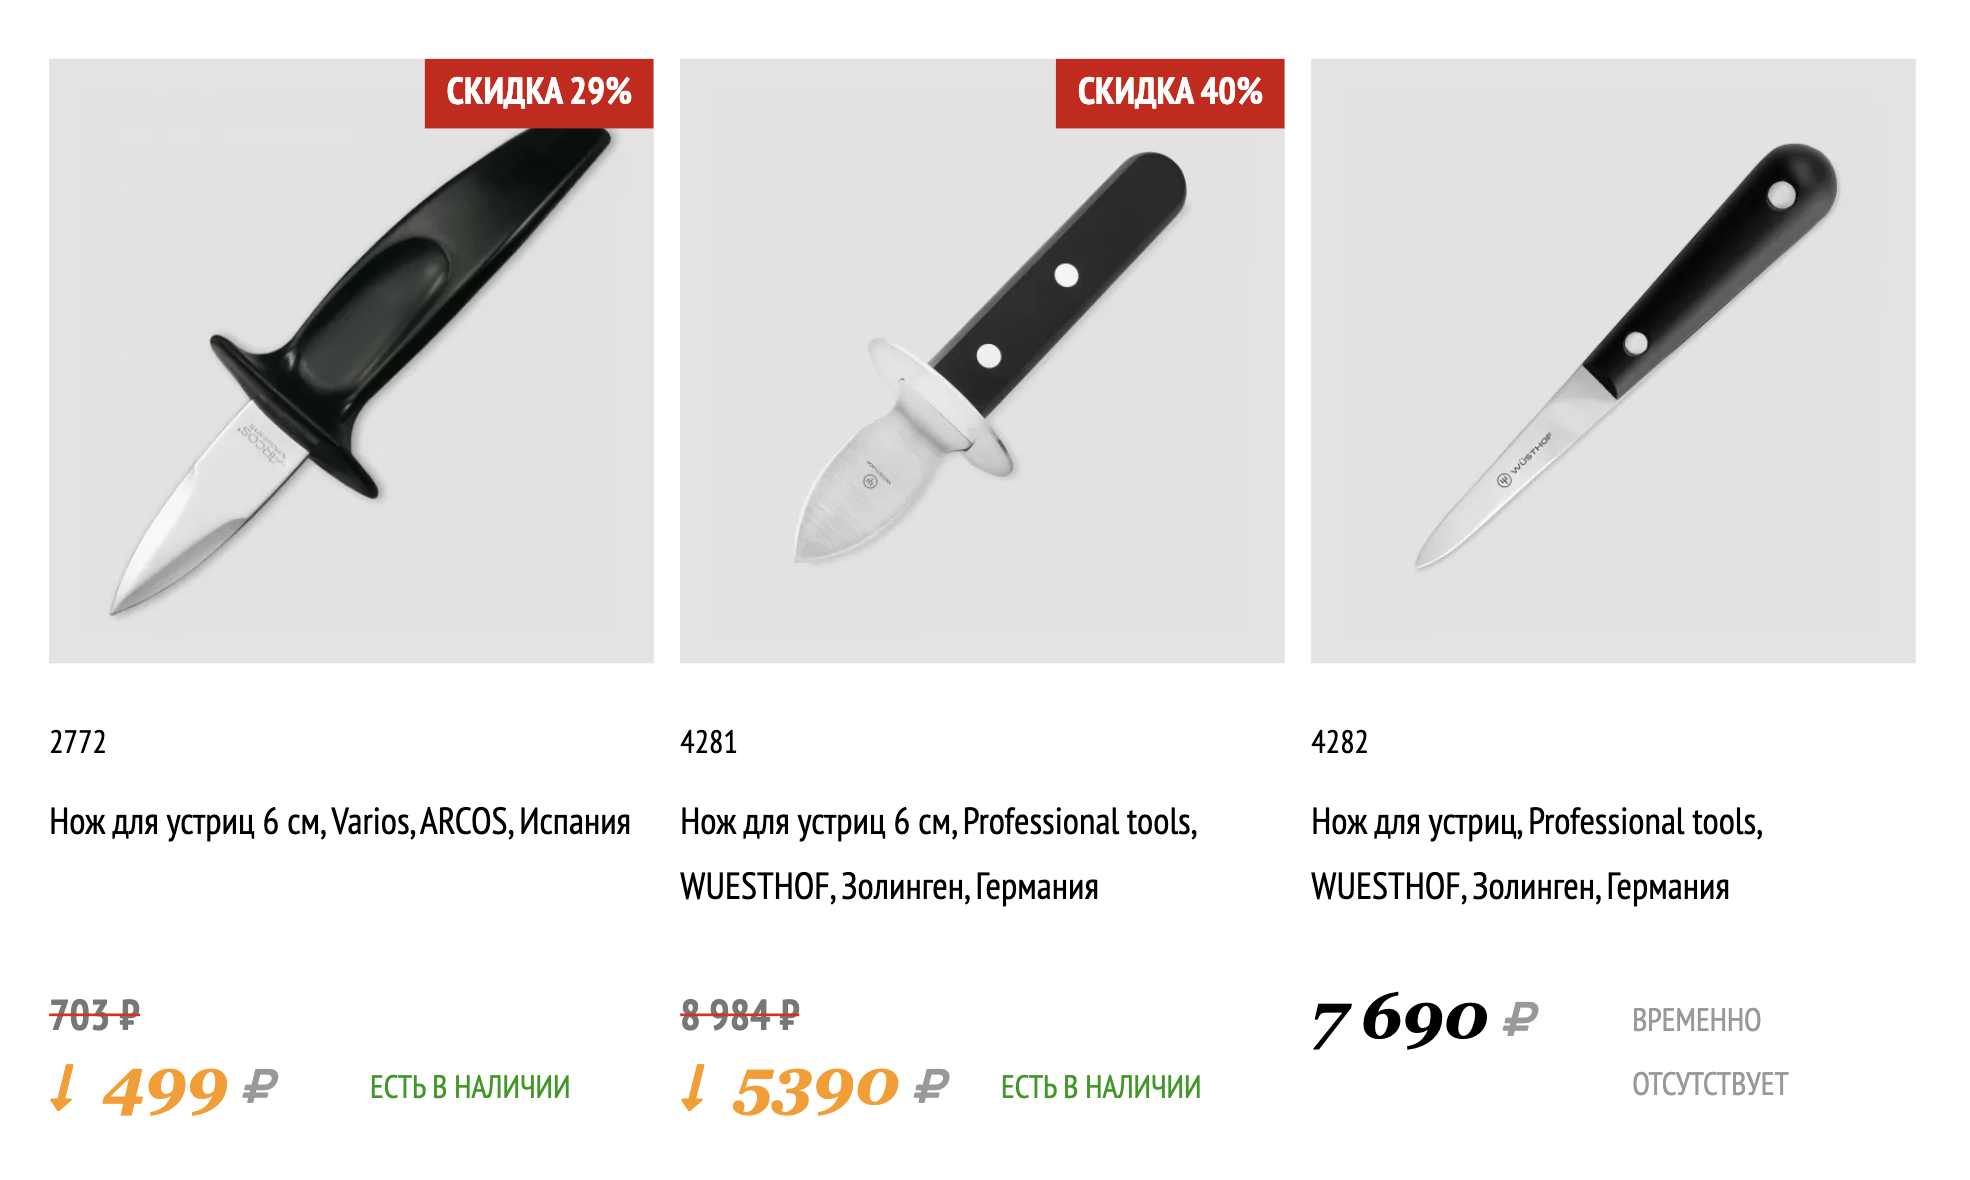 Более бюджетные устричные ножи. Источник: messermeister.ru